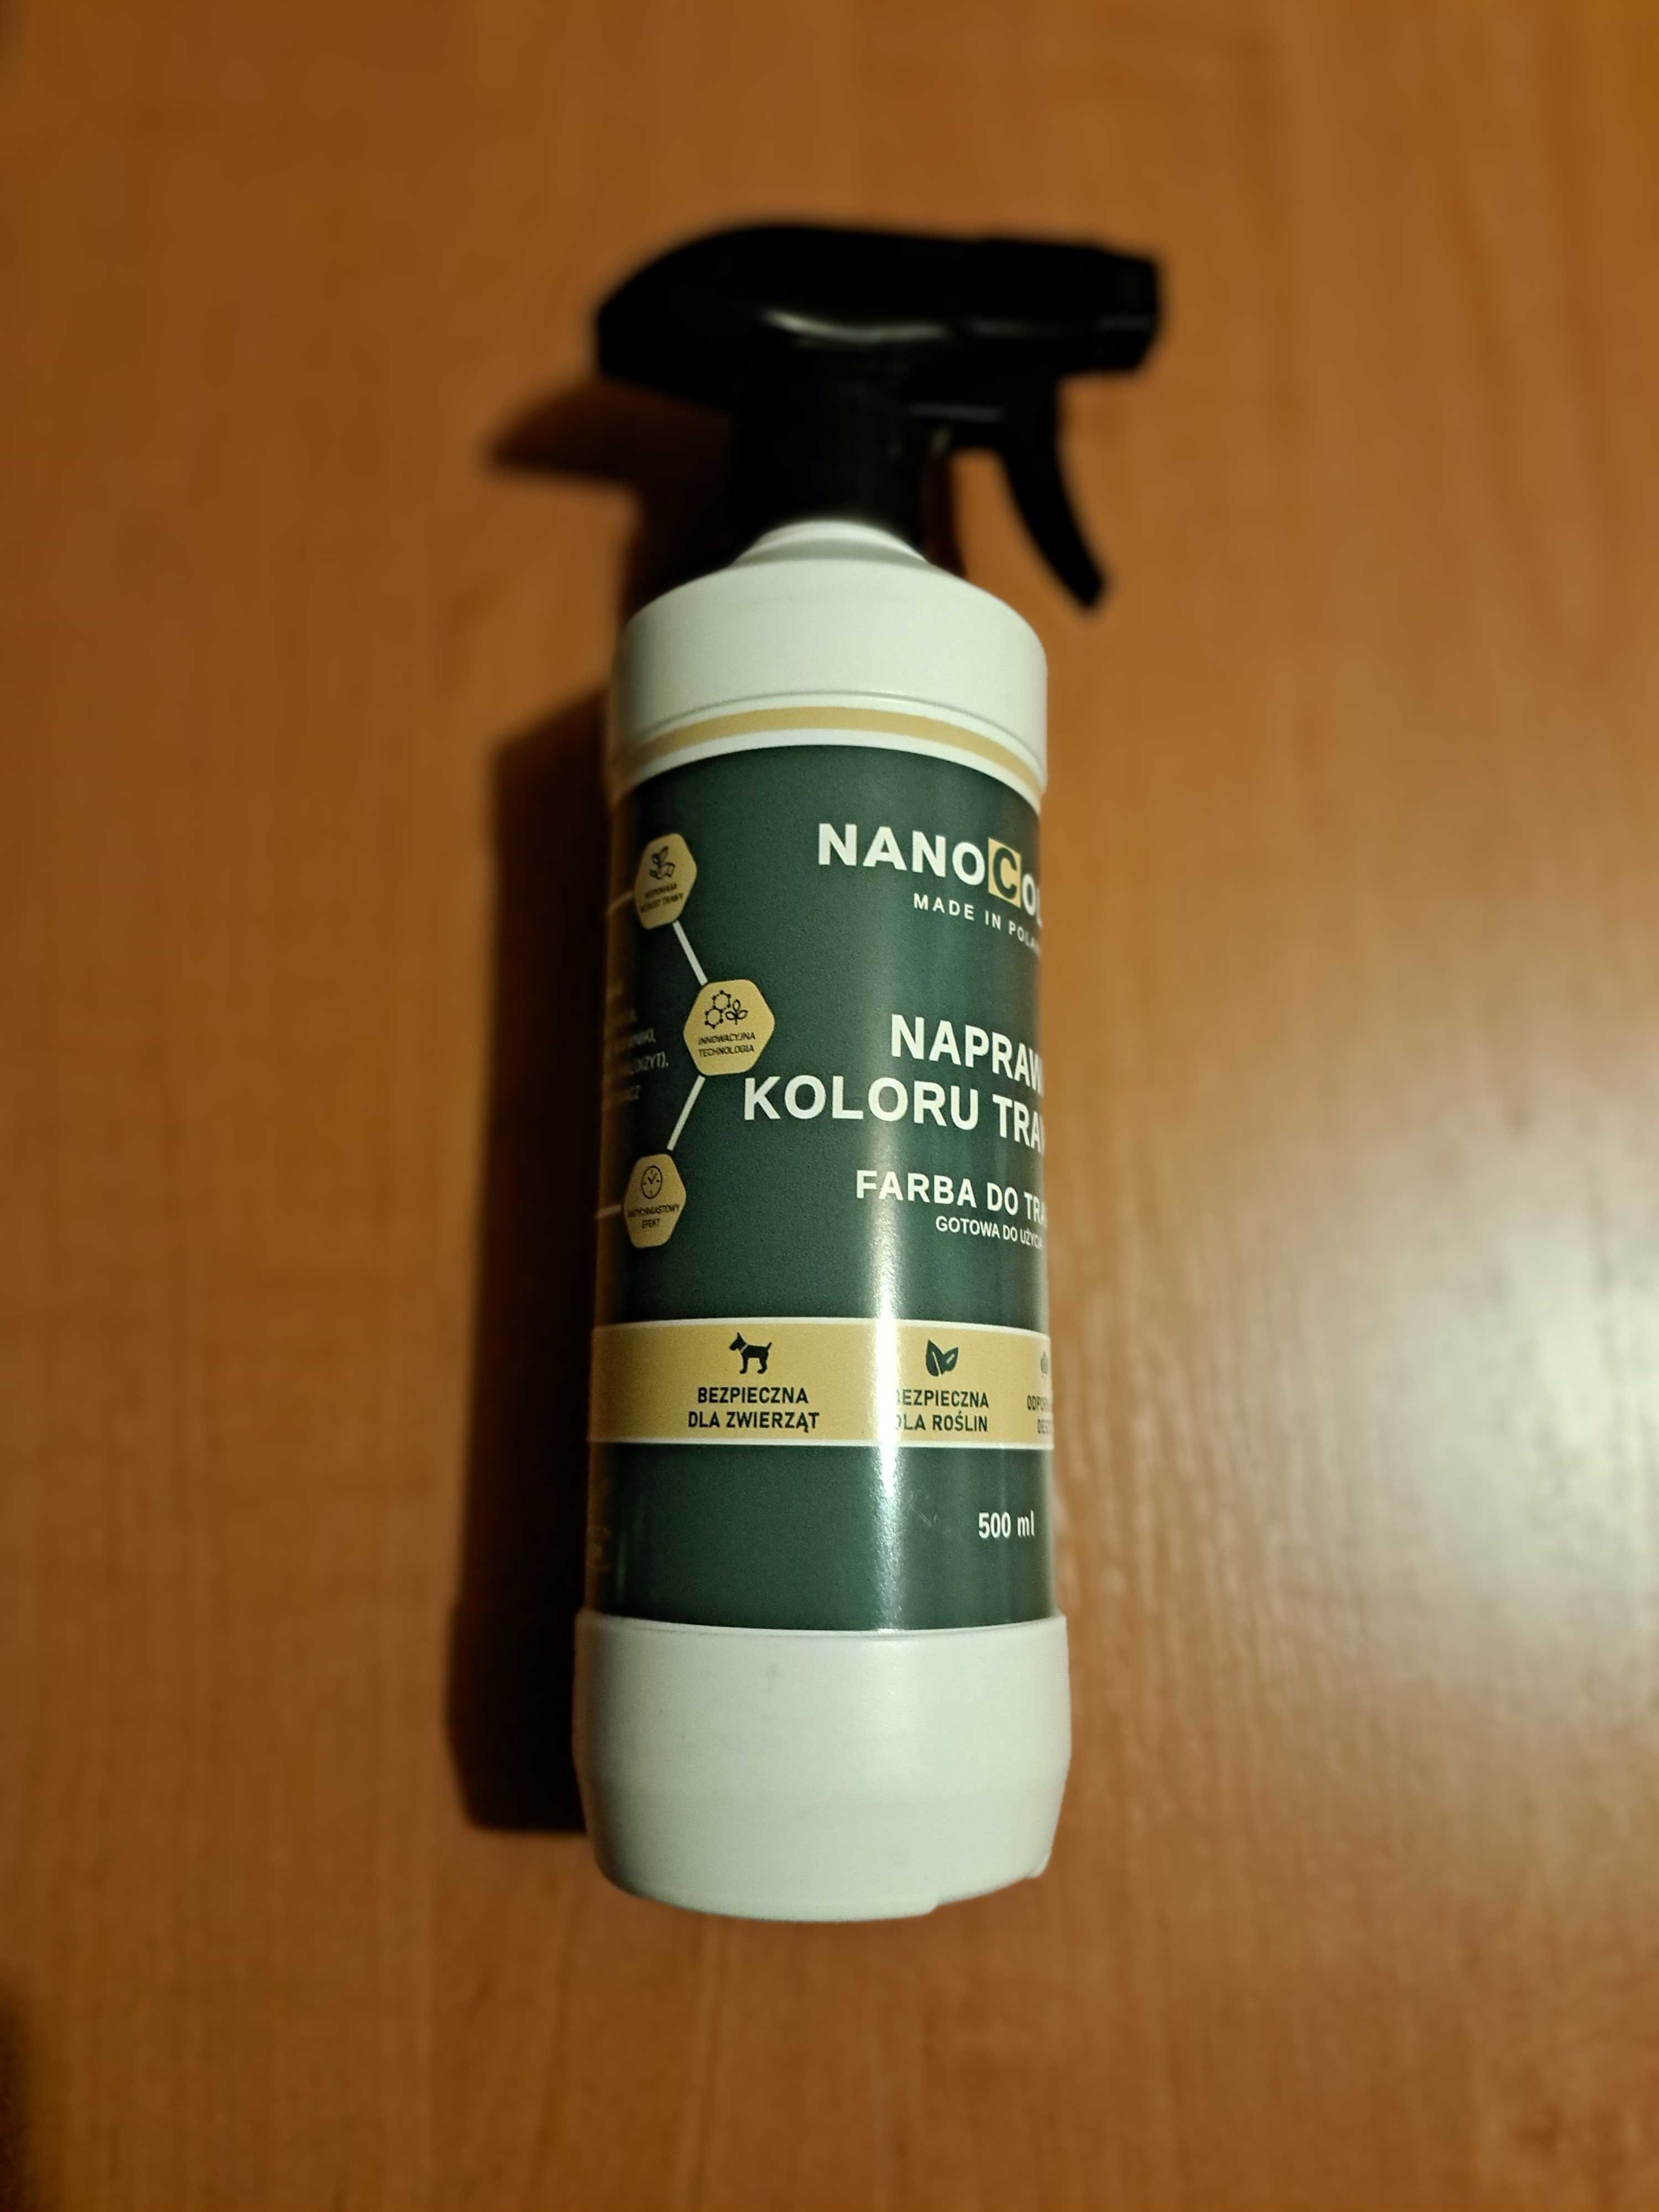 Nanocolor farba do trawy